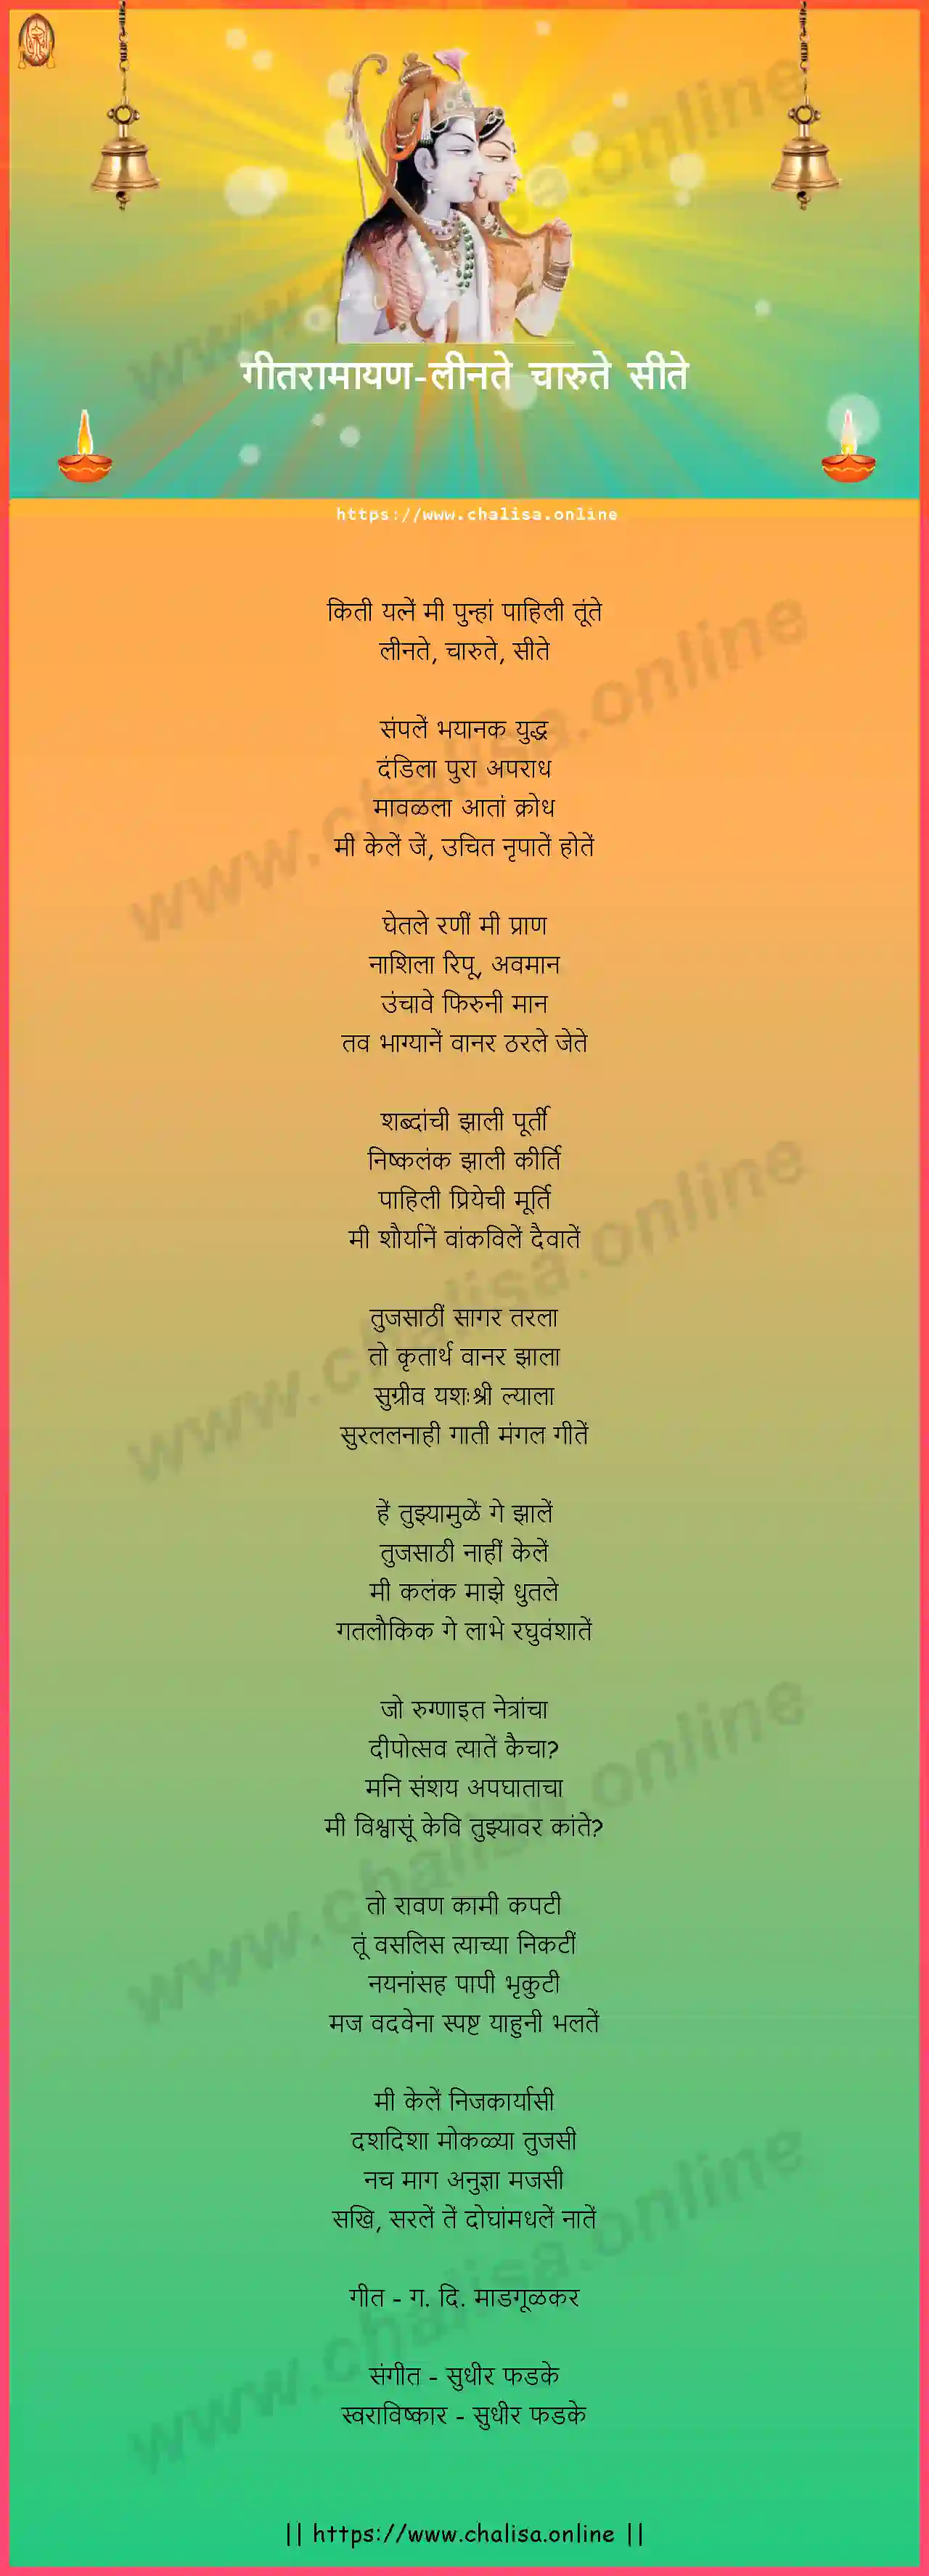 leenate-charute-site-geet-ramayan-marathi-lyrics-download